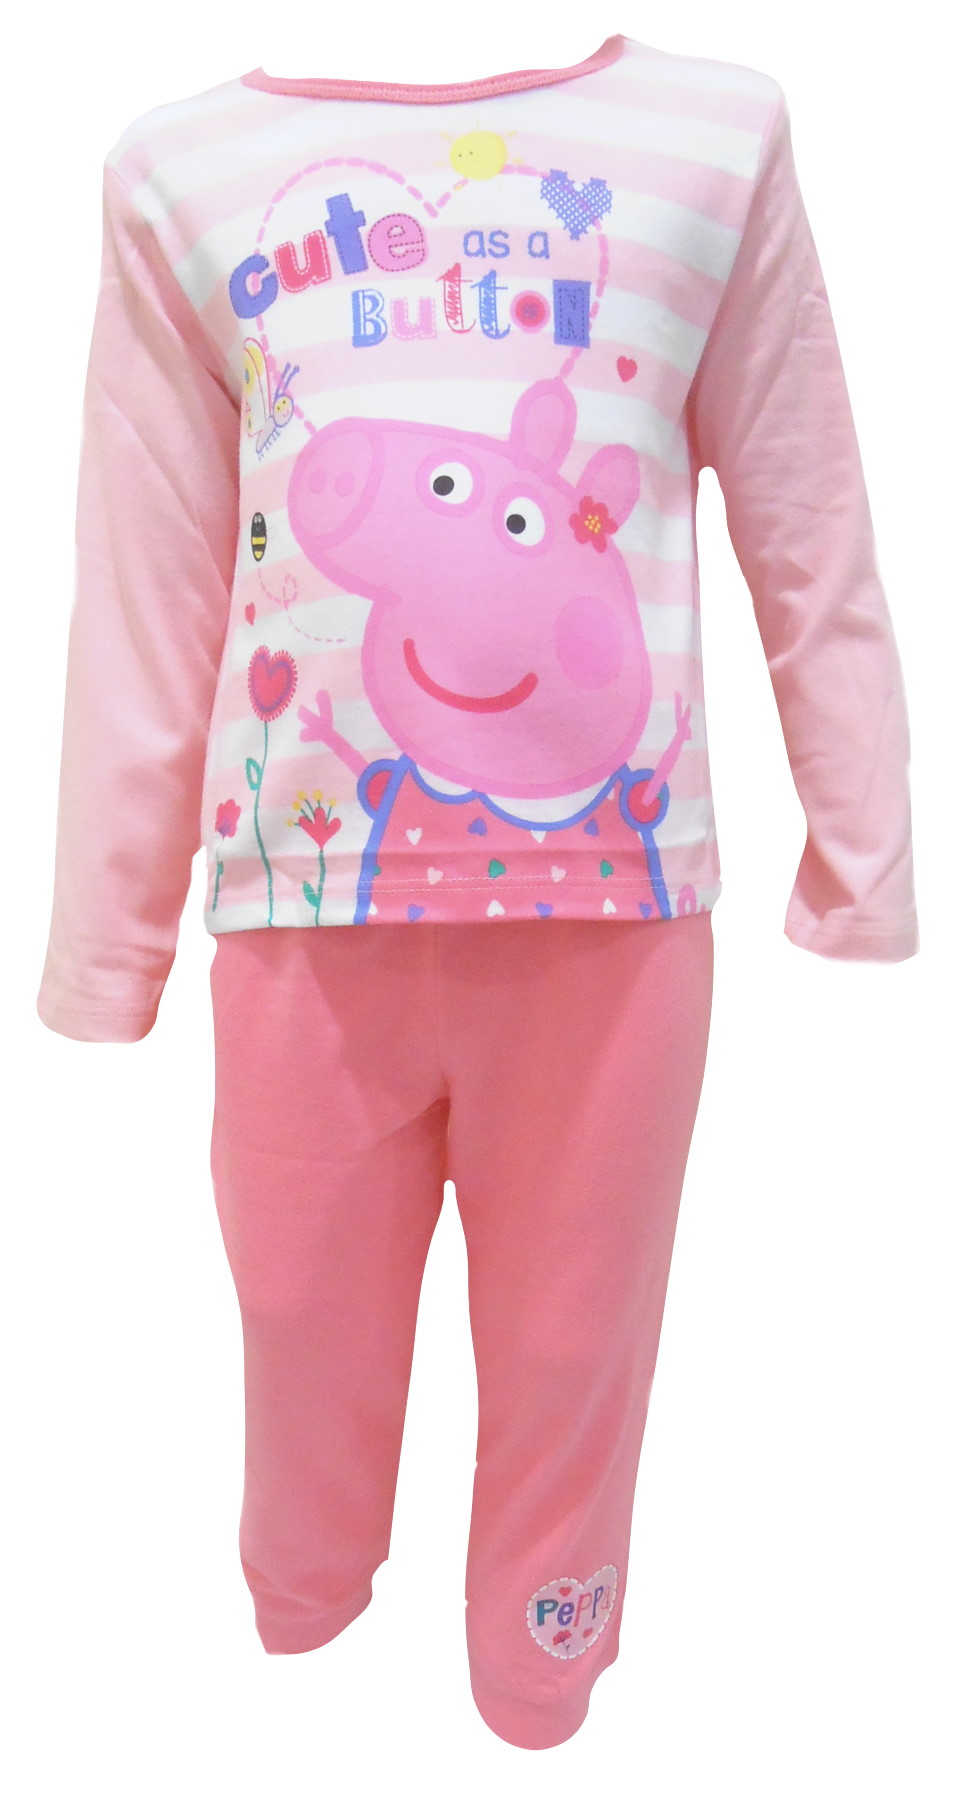 Peppa Pig Exclusive Pyjamas (2).JPG  by Thingimijigs